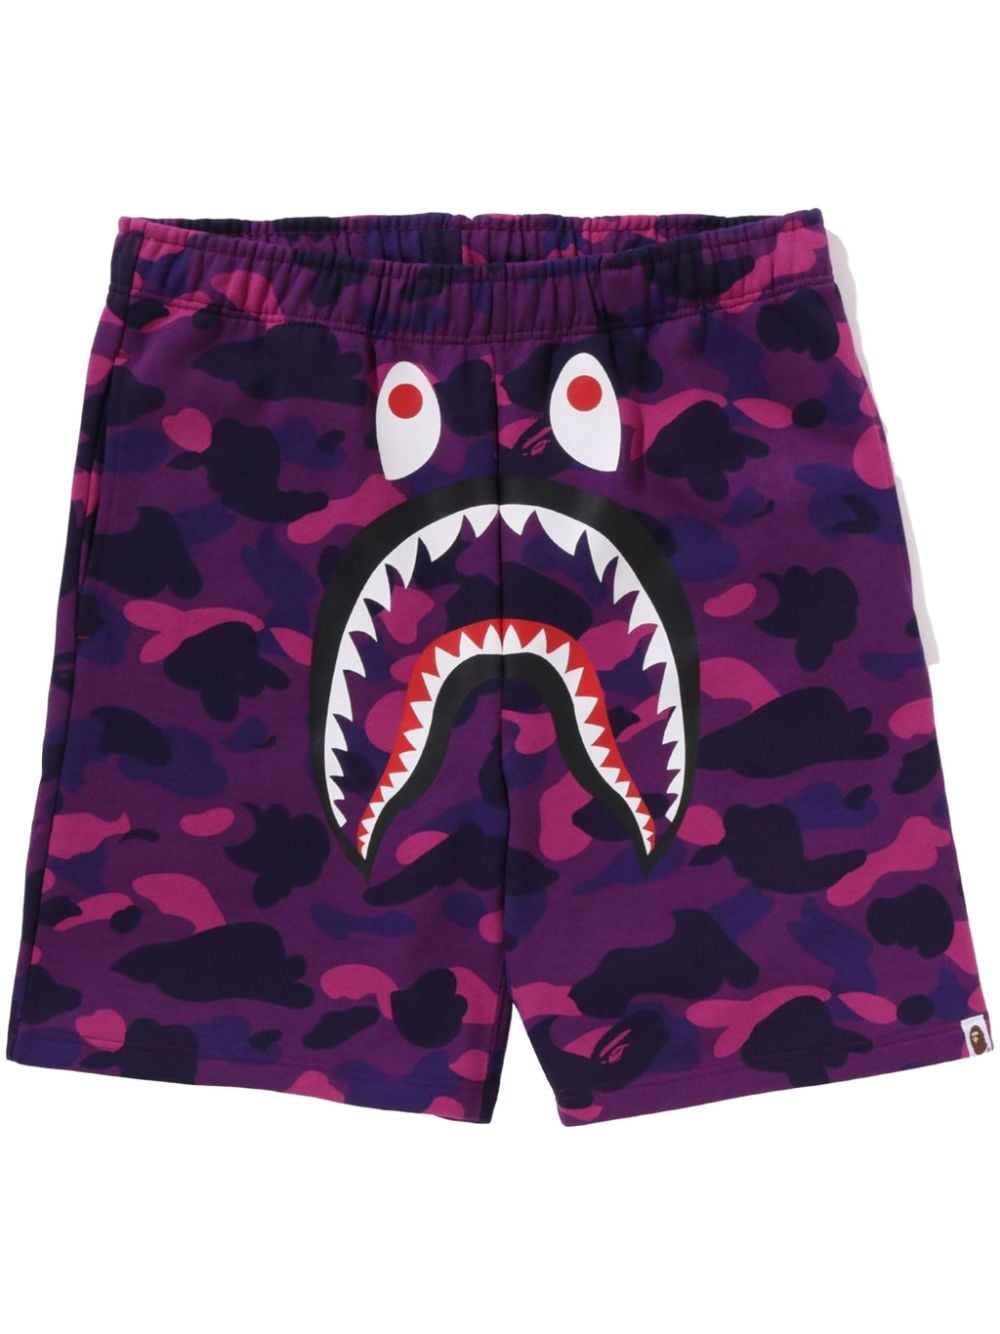 Abc Camo Shark track shorts